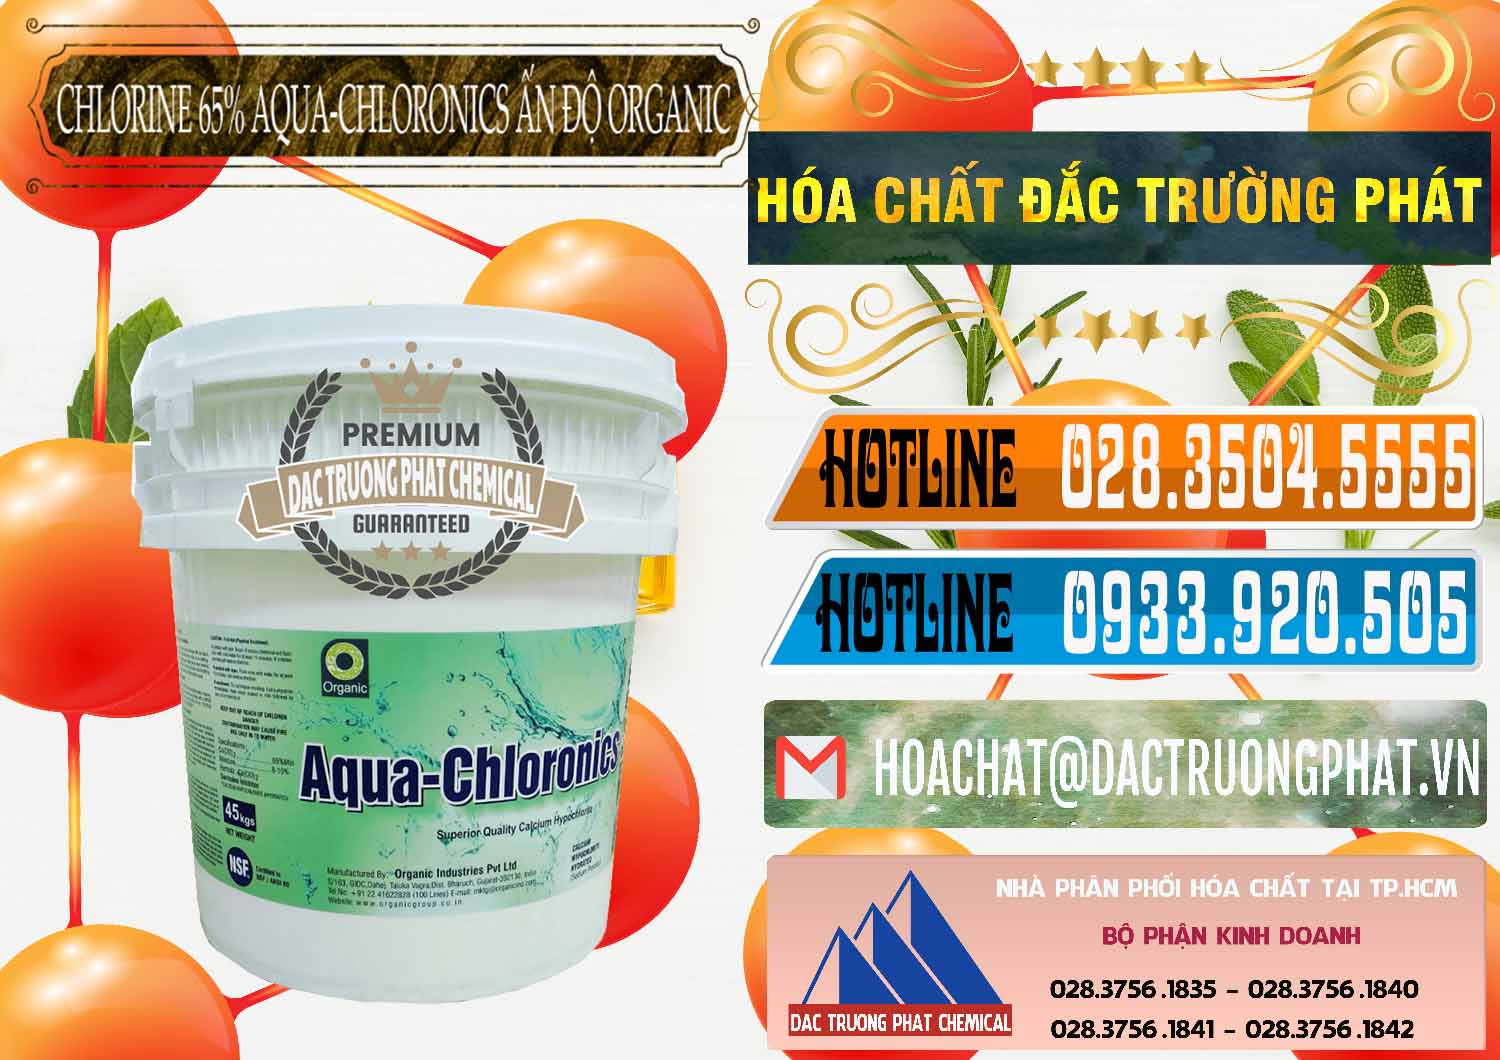 Cty chuyên kinh doanh - bán Chlorine – Clorin 65% Aqua-Chloronics Ấn Độ Organic India - 0210 - Phân phối ( kinh doanh ) hóa chất tại TP.HCM - stmp.net